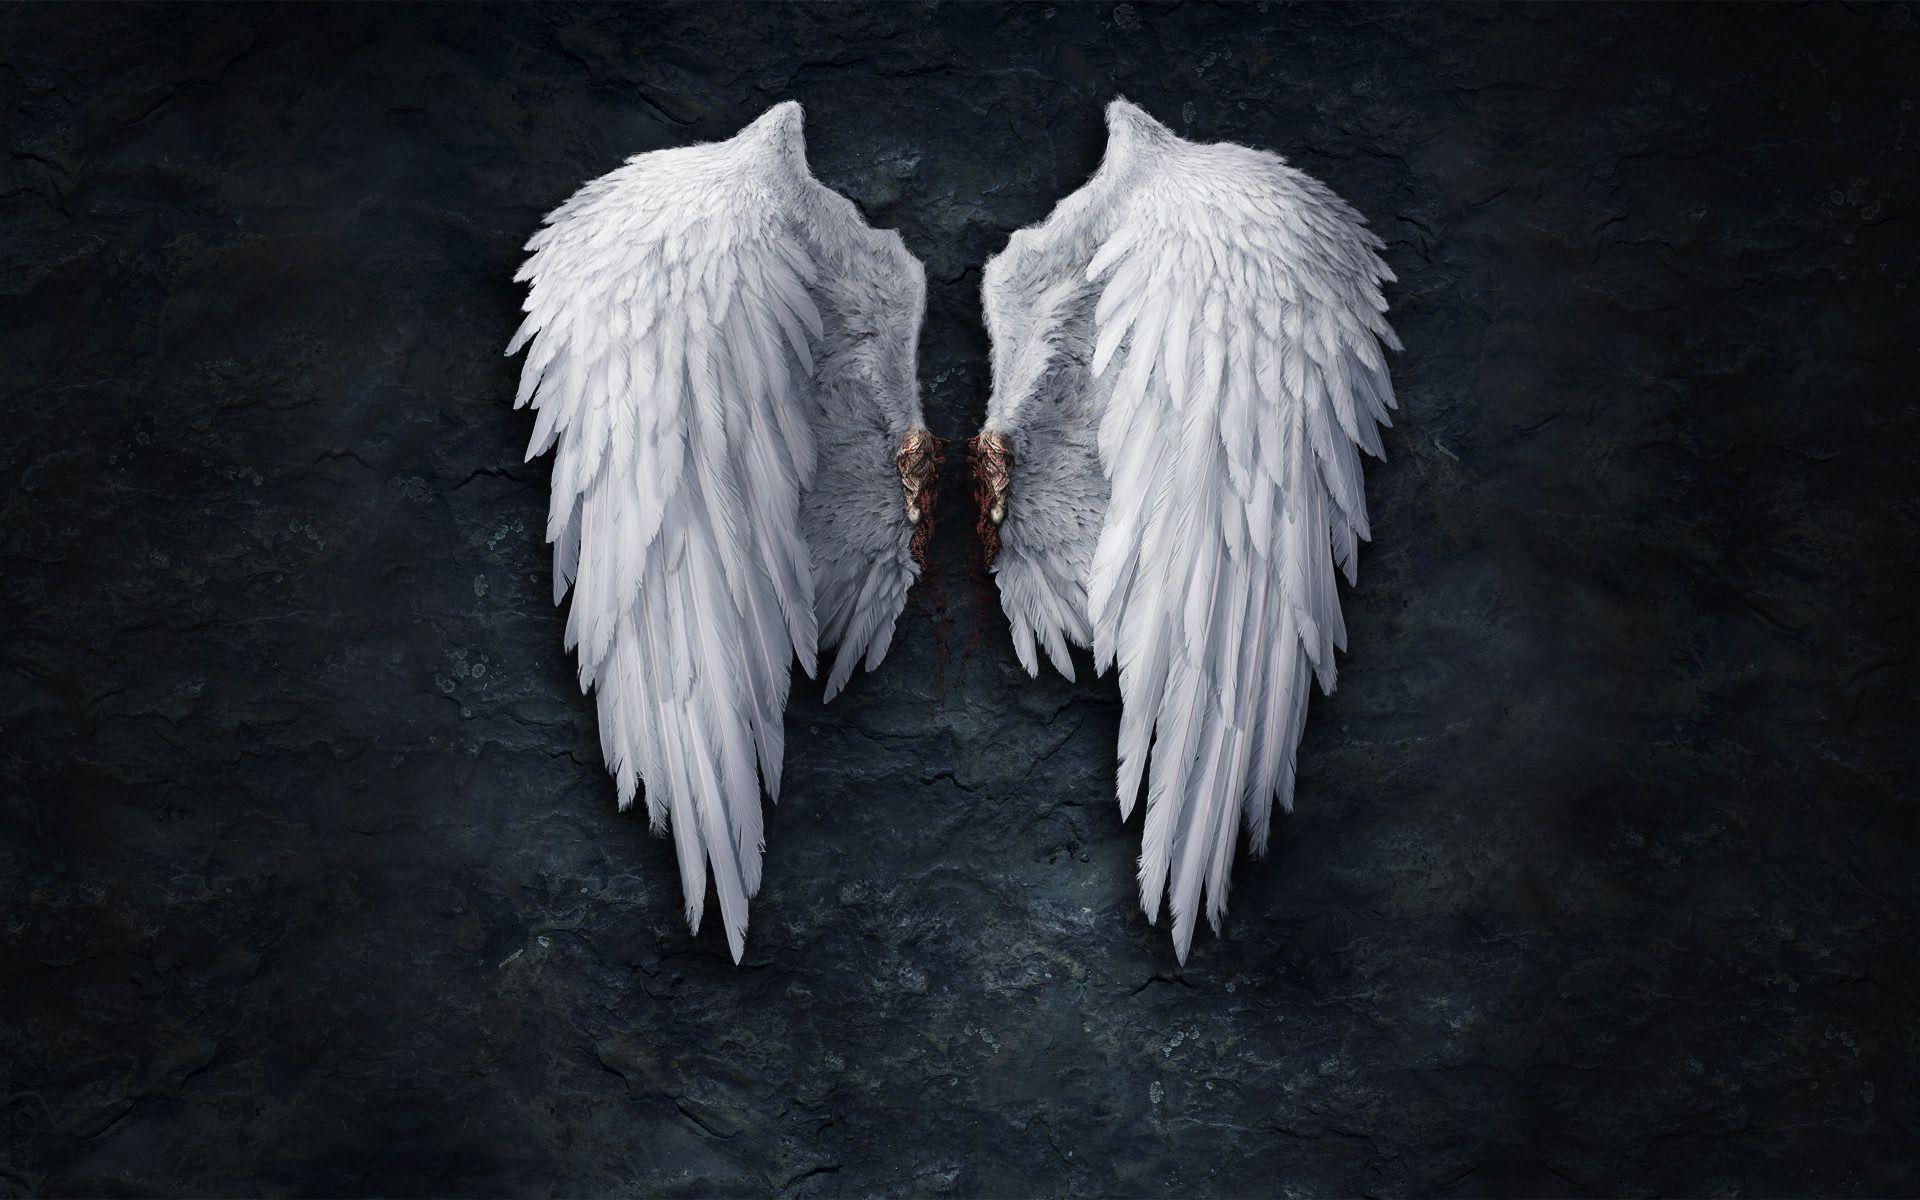 1274 Angel Broken Wings Images Stock Photos  Vectors  Shutterstock